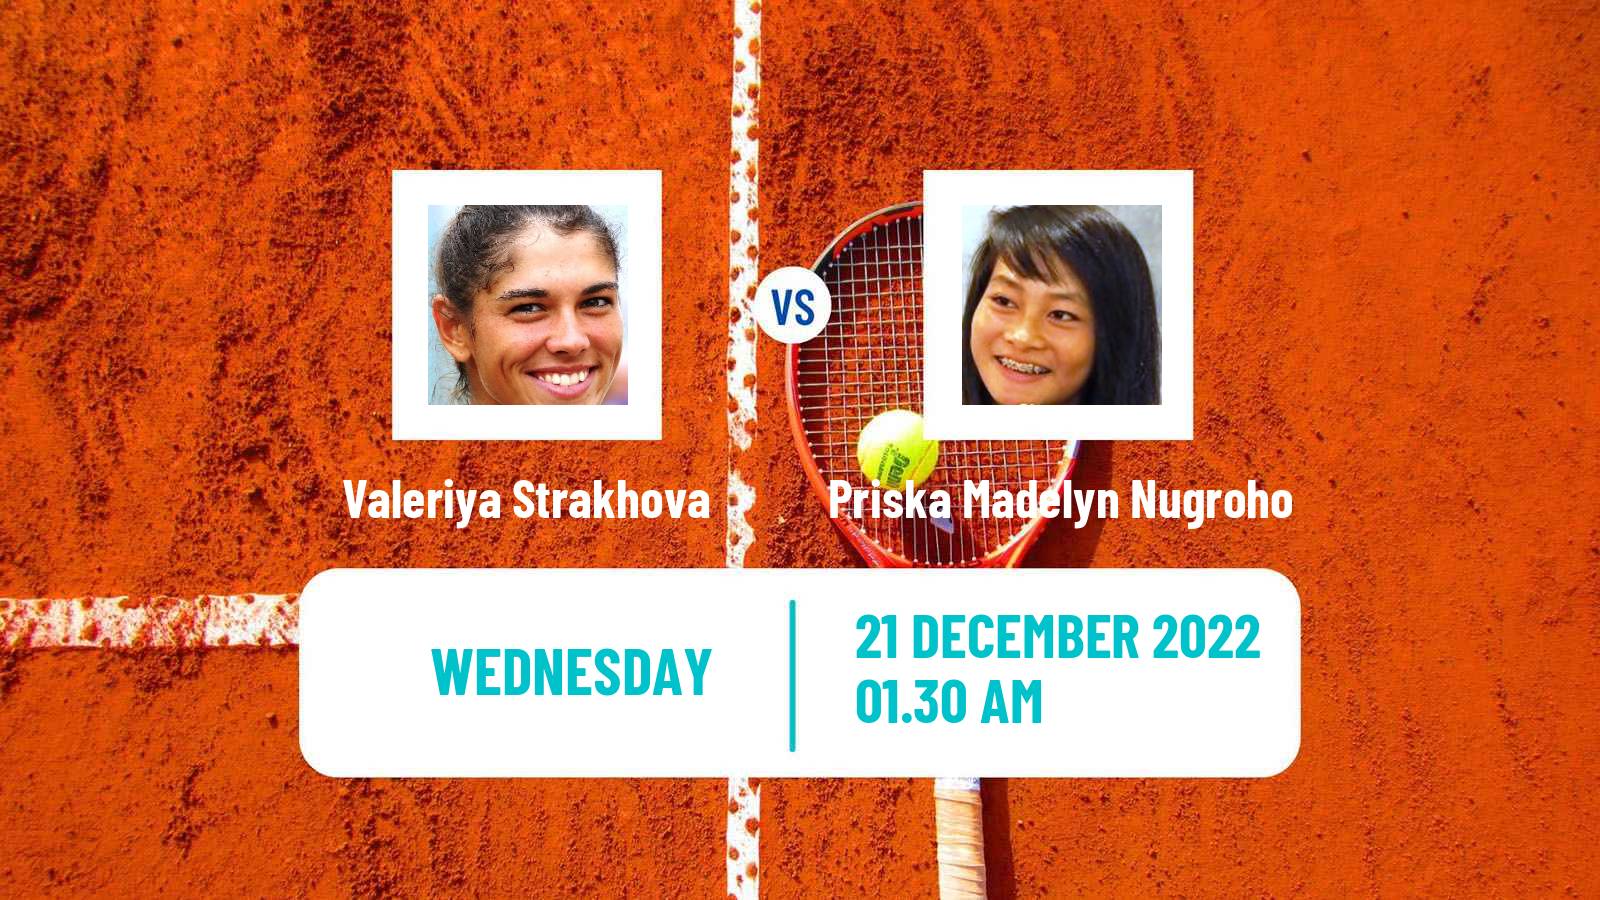 Tennis ITF Tournaments Valeriya Strakhova - Priska Madelyn Nugroho